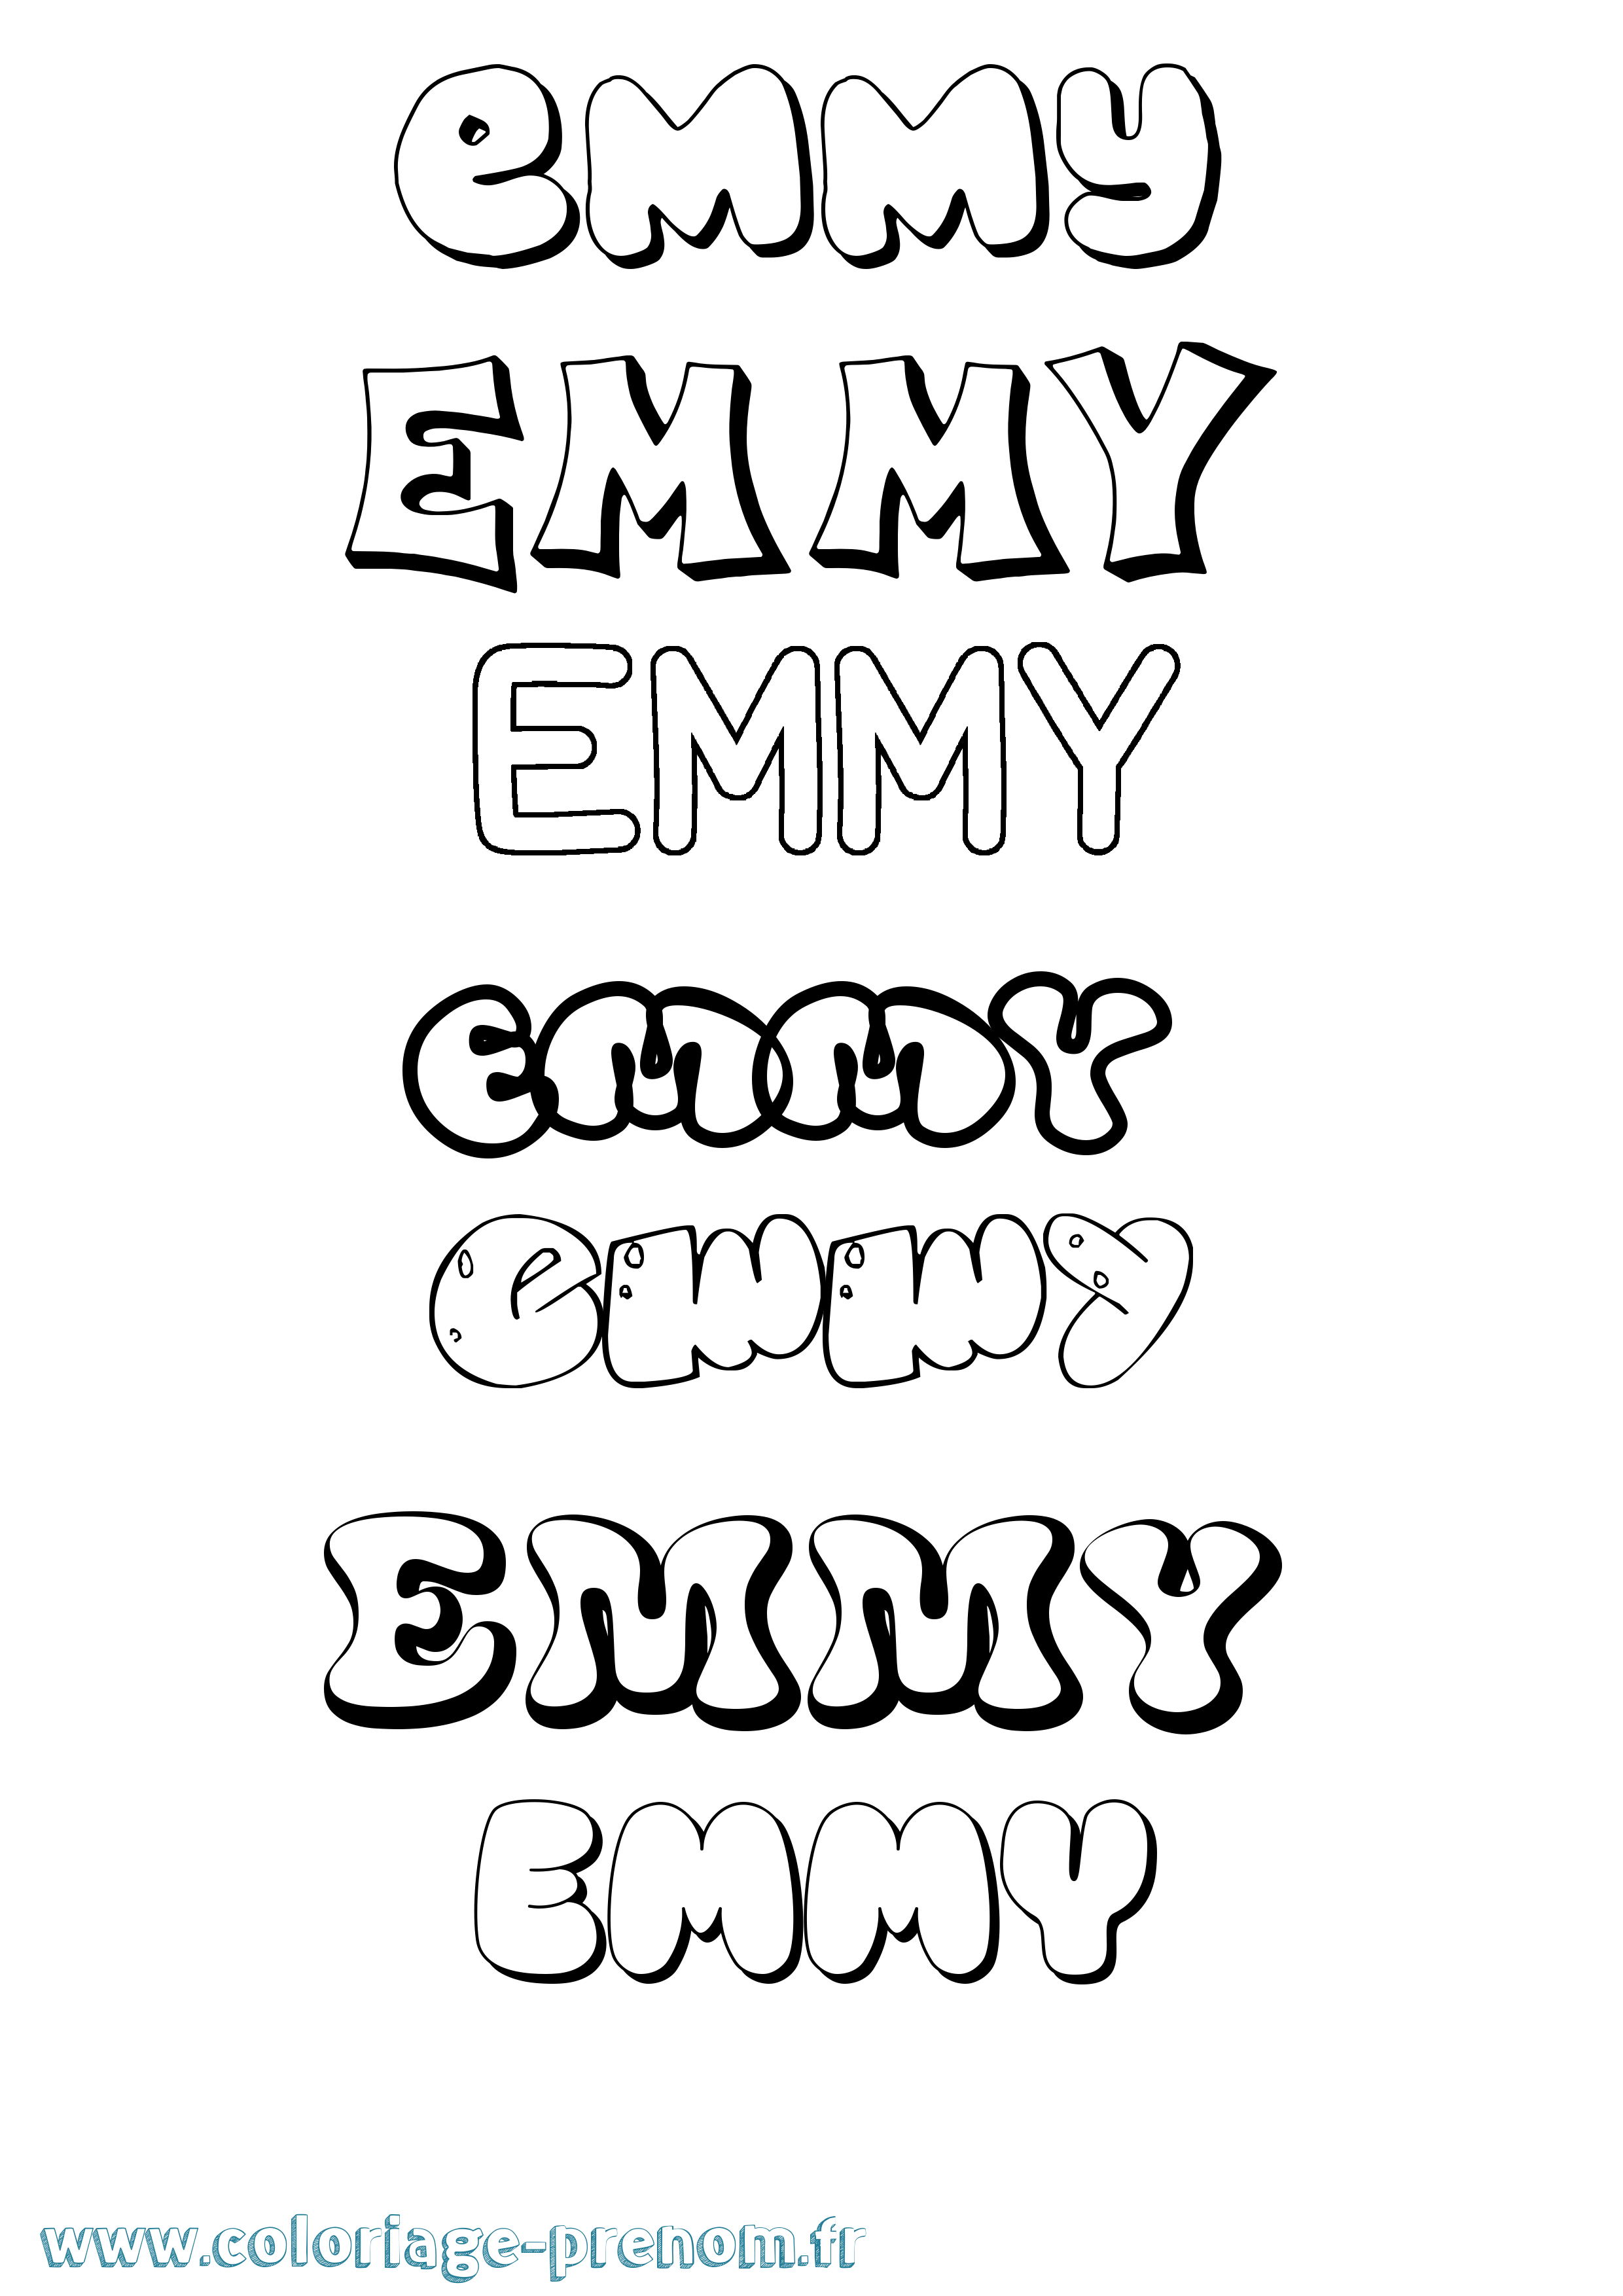 Coloriage prénom Emmy